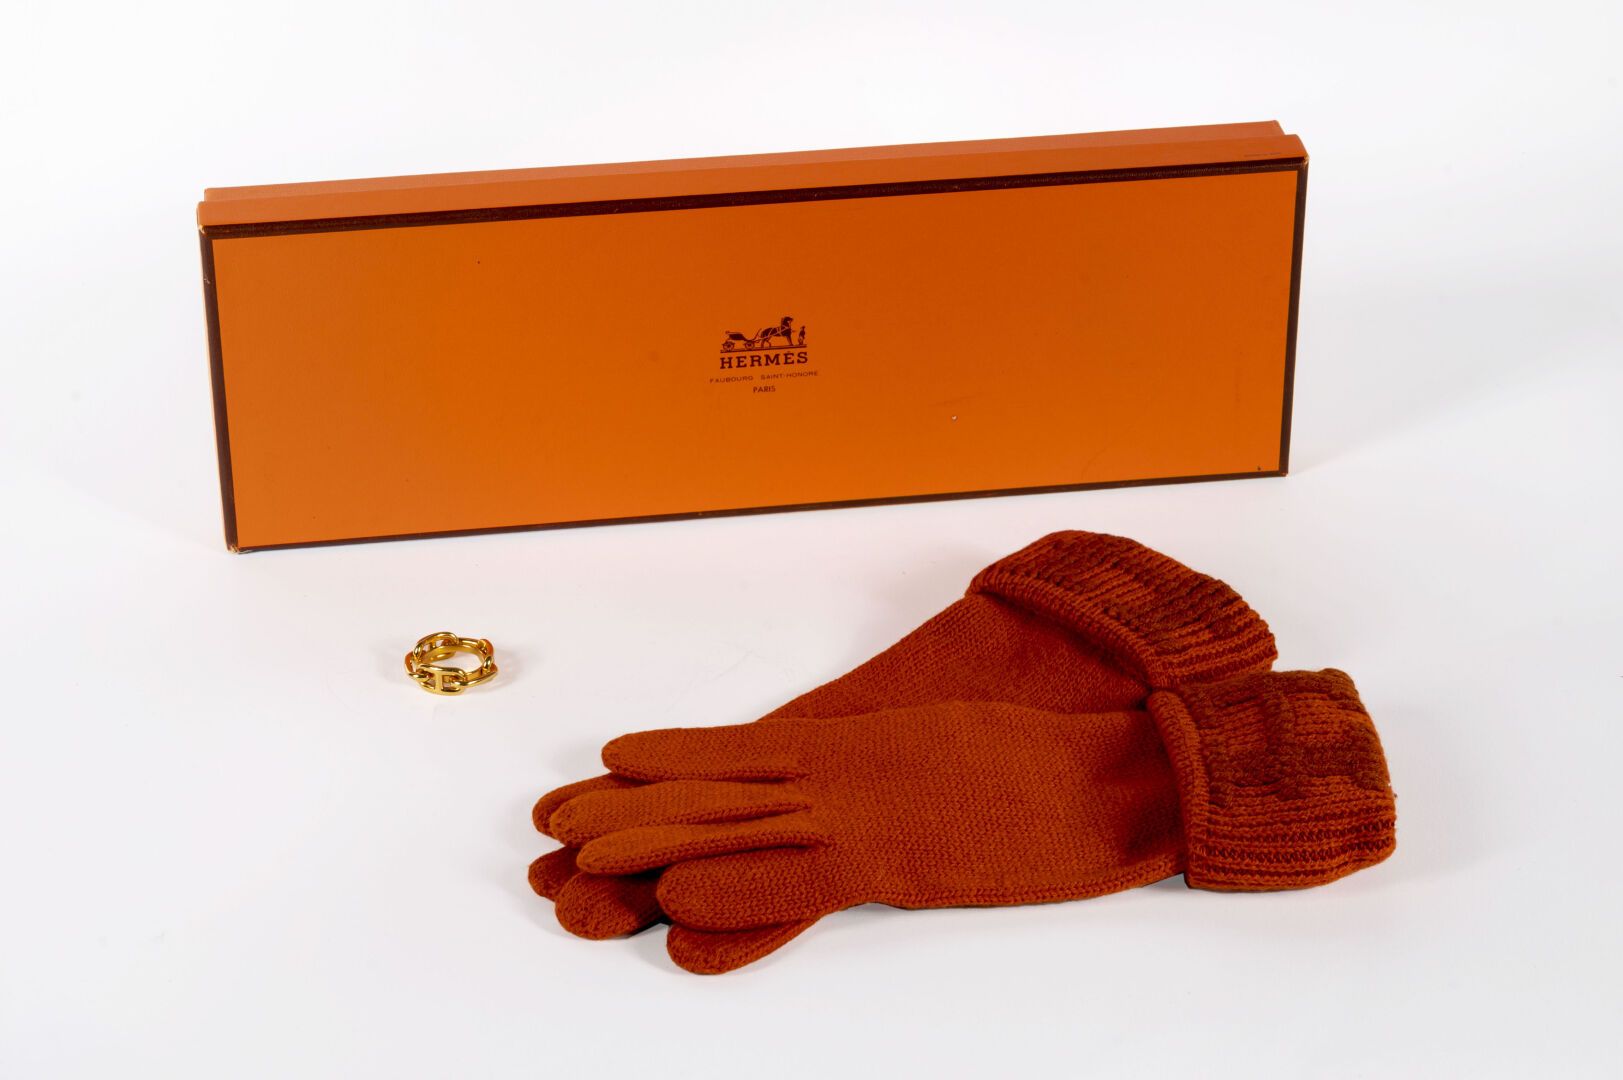 HERMES 地段包括。

- 橙色羊绒手套一对，尺寸中等

- 金色金属围巾戒指，墨链图案

箱子